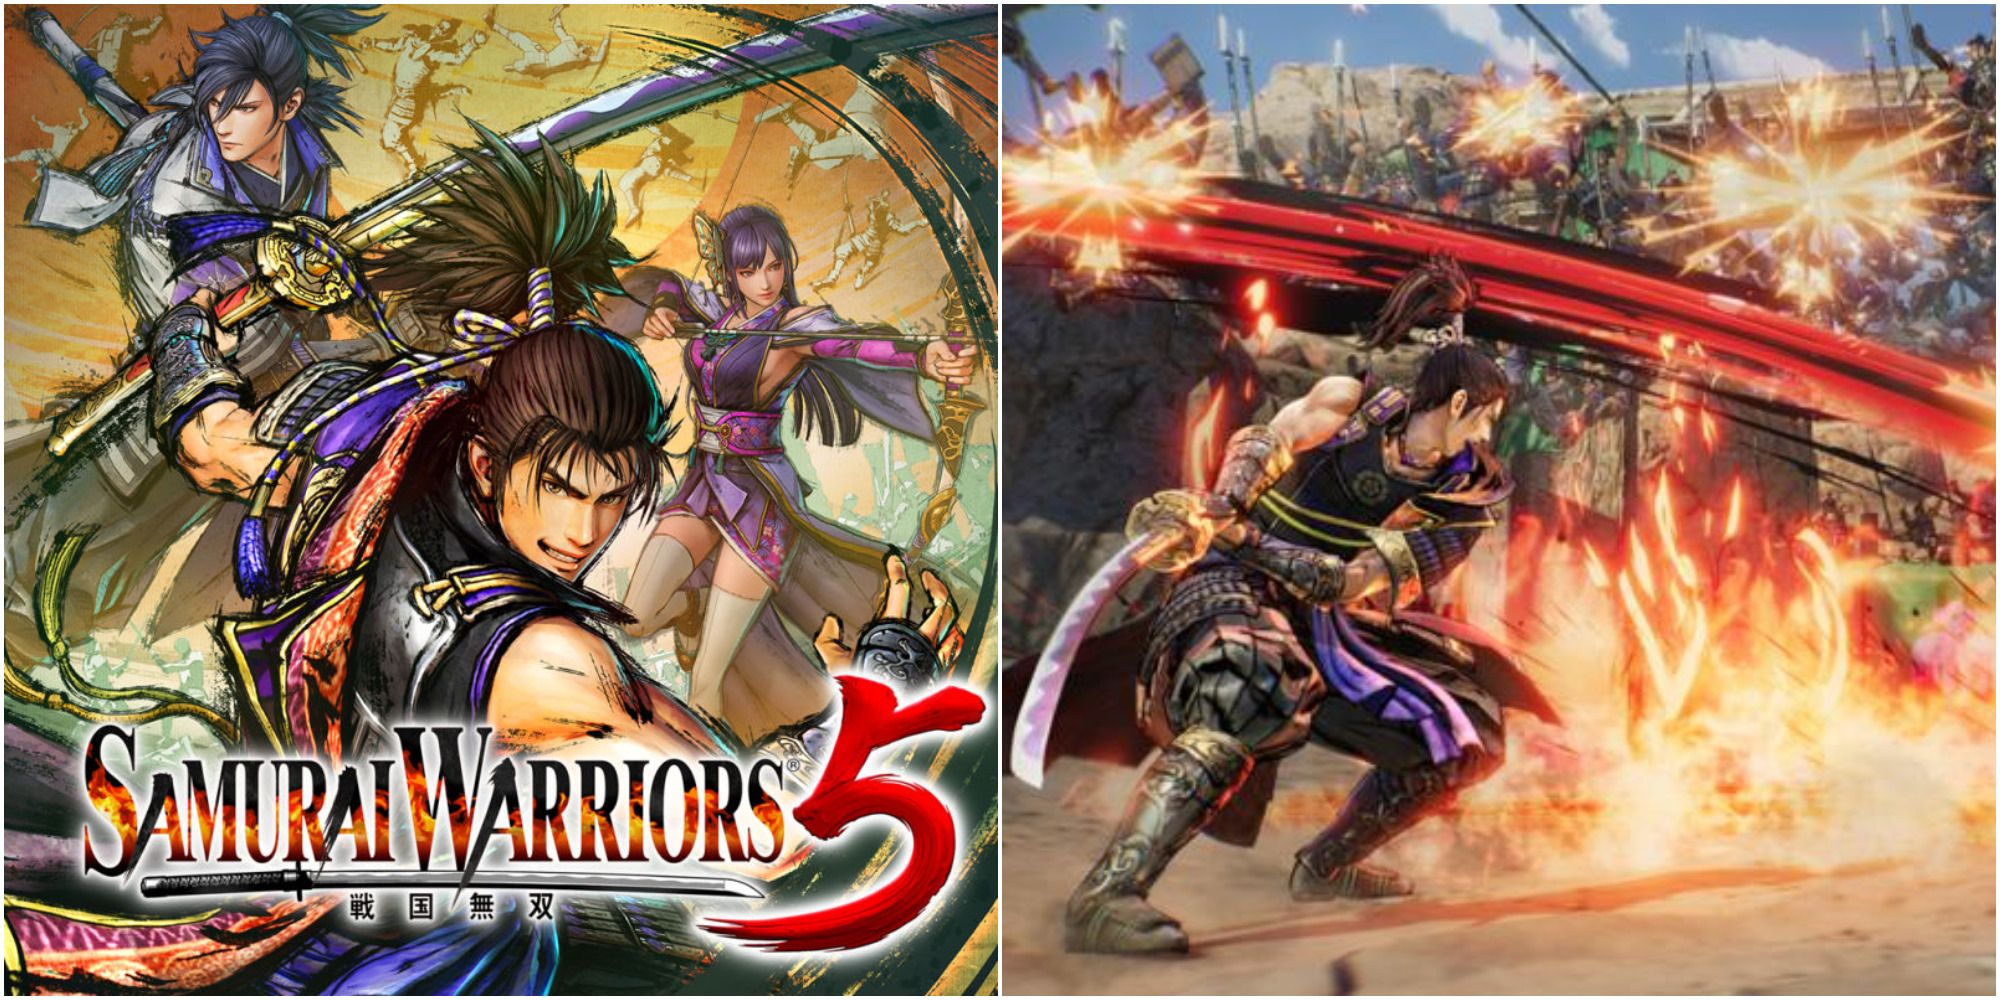 samurai warriors 5 cover & gameplay